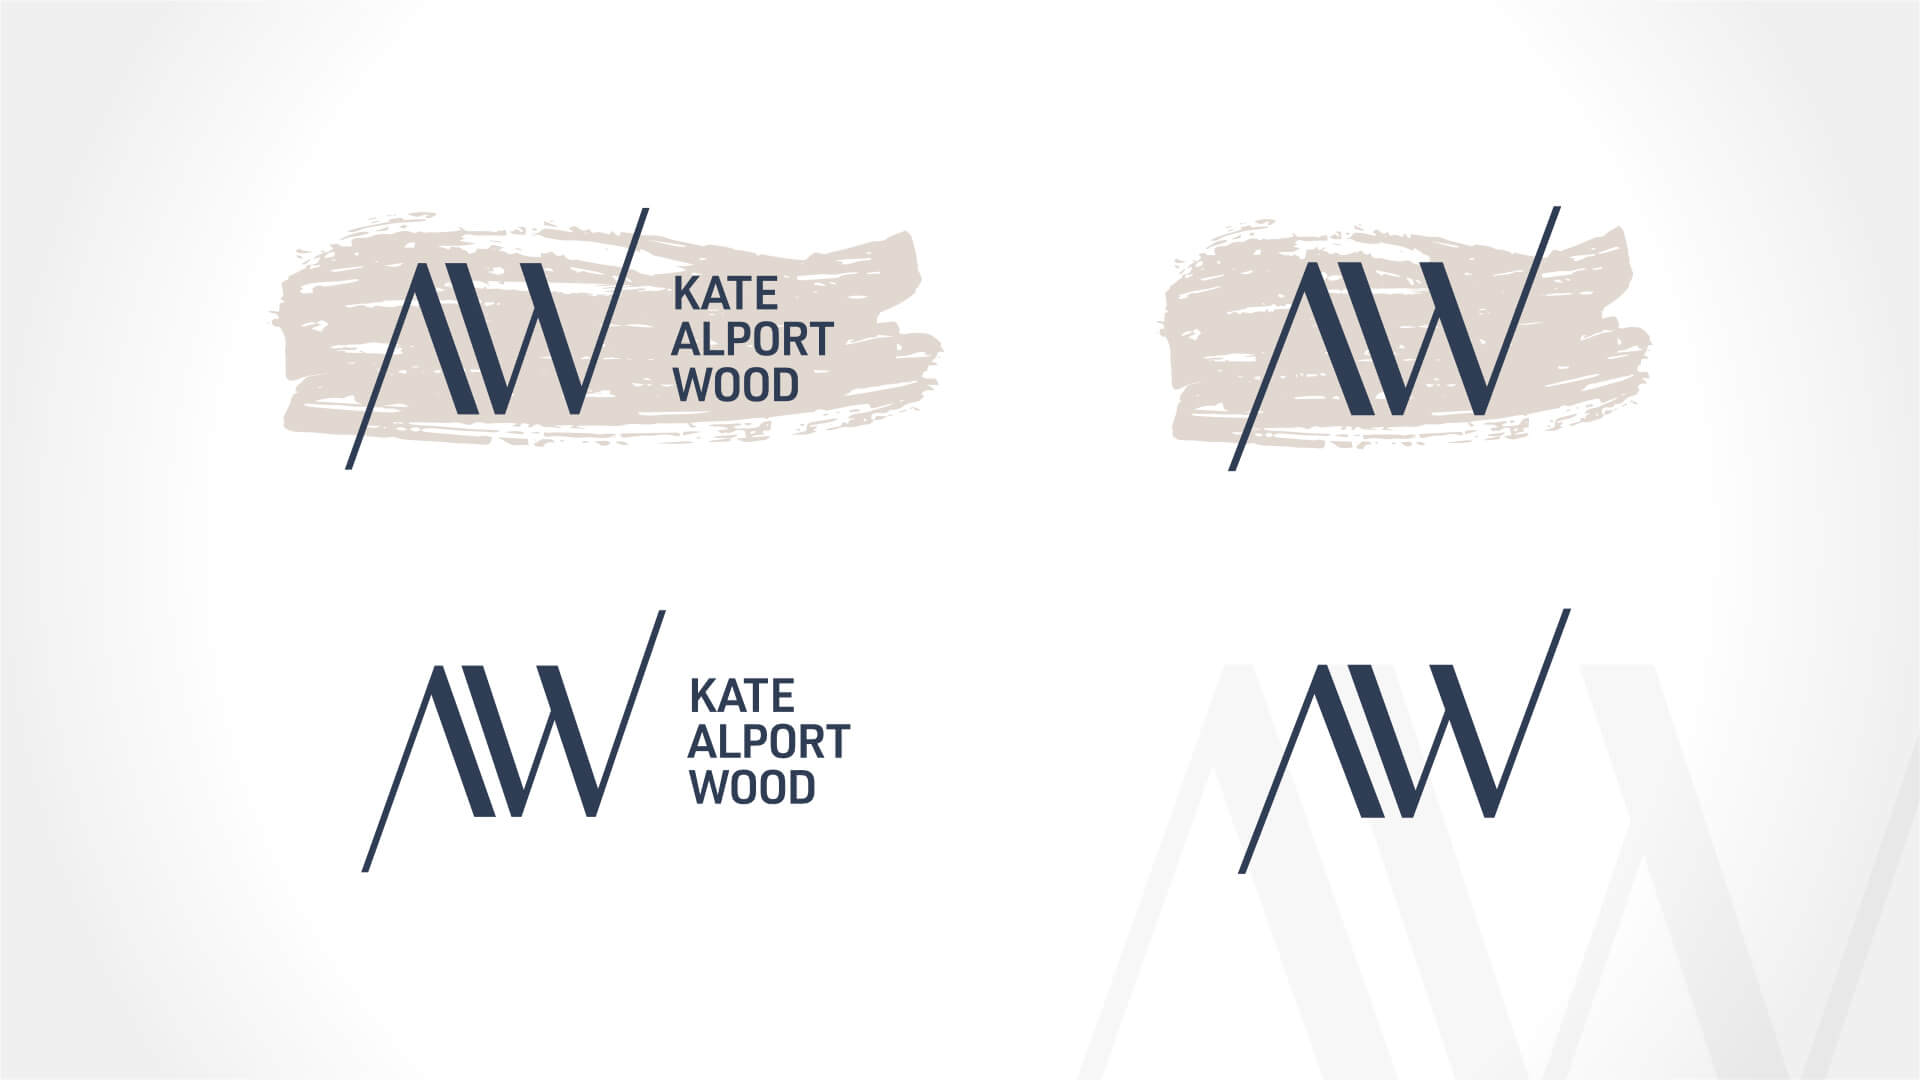 Kate Alport Wood Consulting, Logo, Kate Alport Wood Logo, Visual Identity, Portfolio Image, Flexible logo usage options.